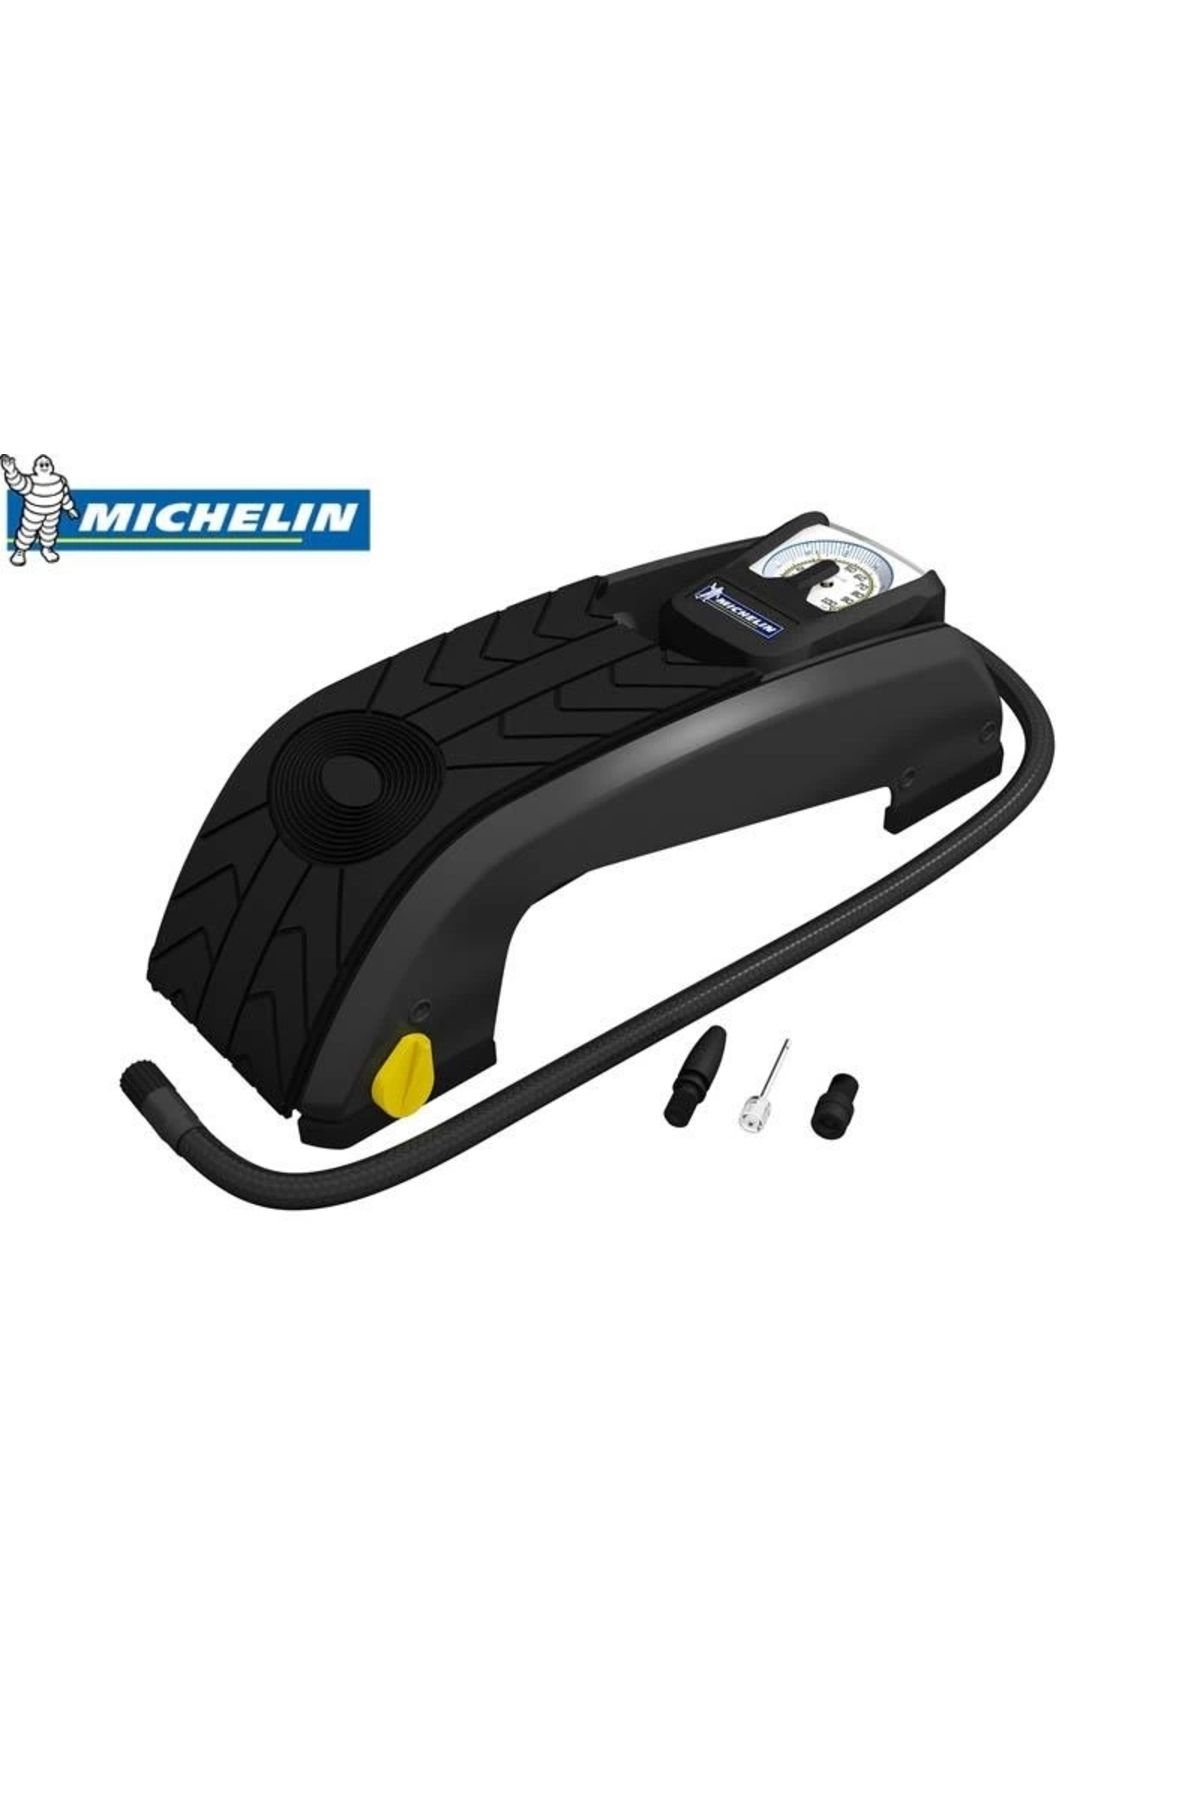 Michelin Mc12204 Basınç Göstergeli Ayak Pompası